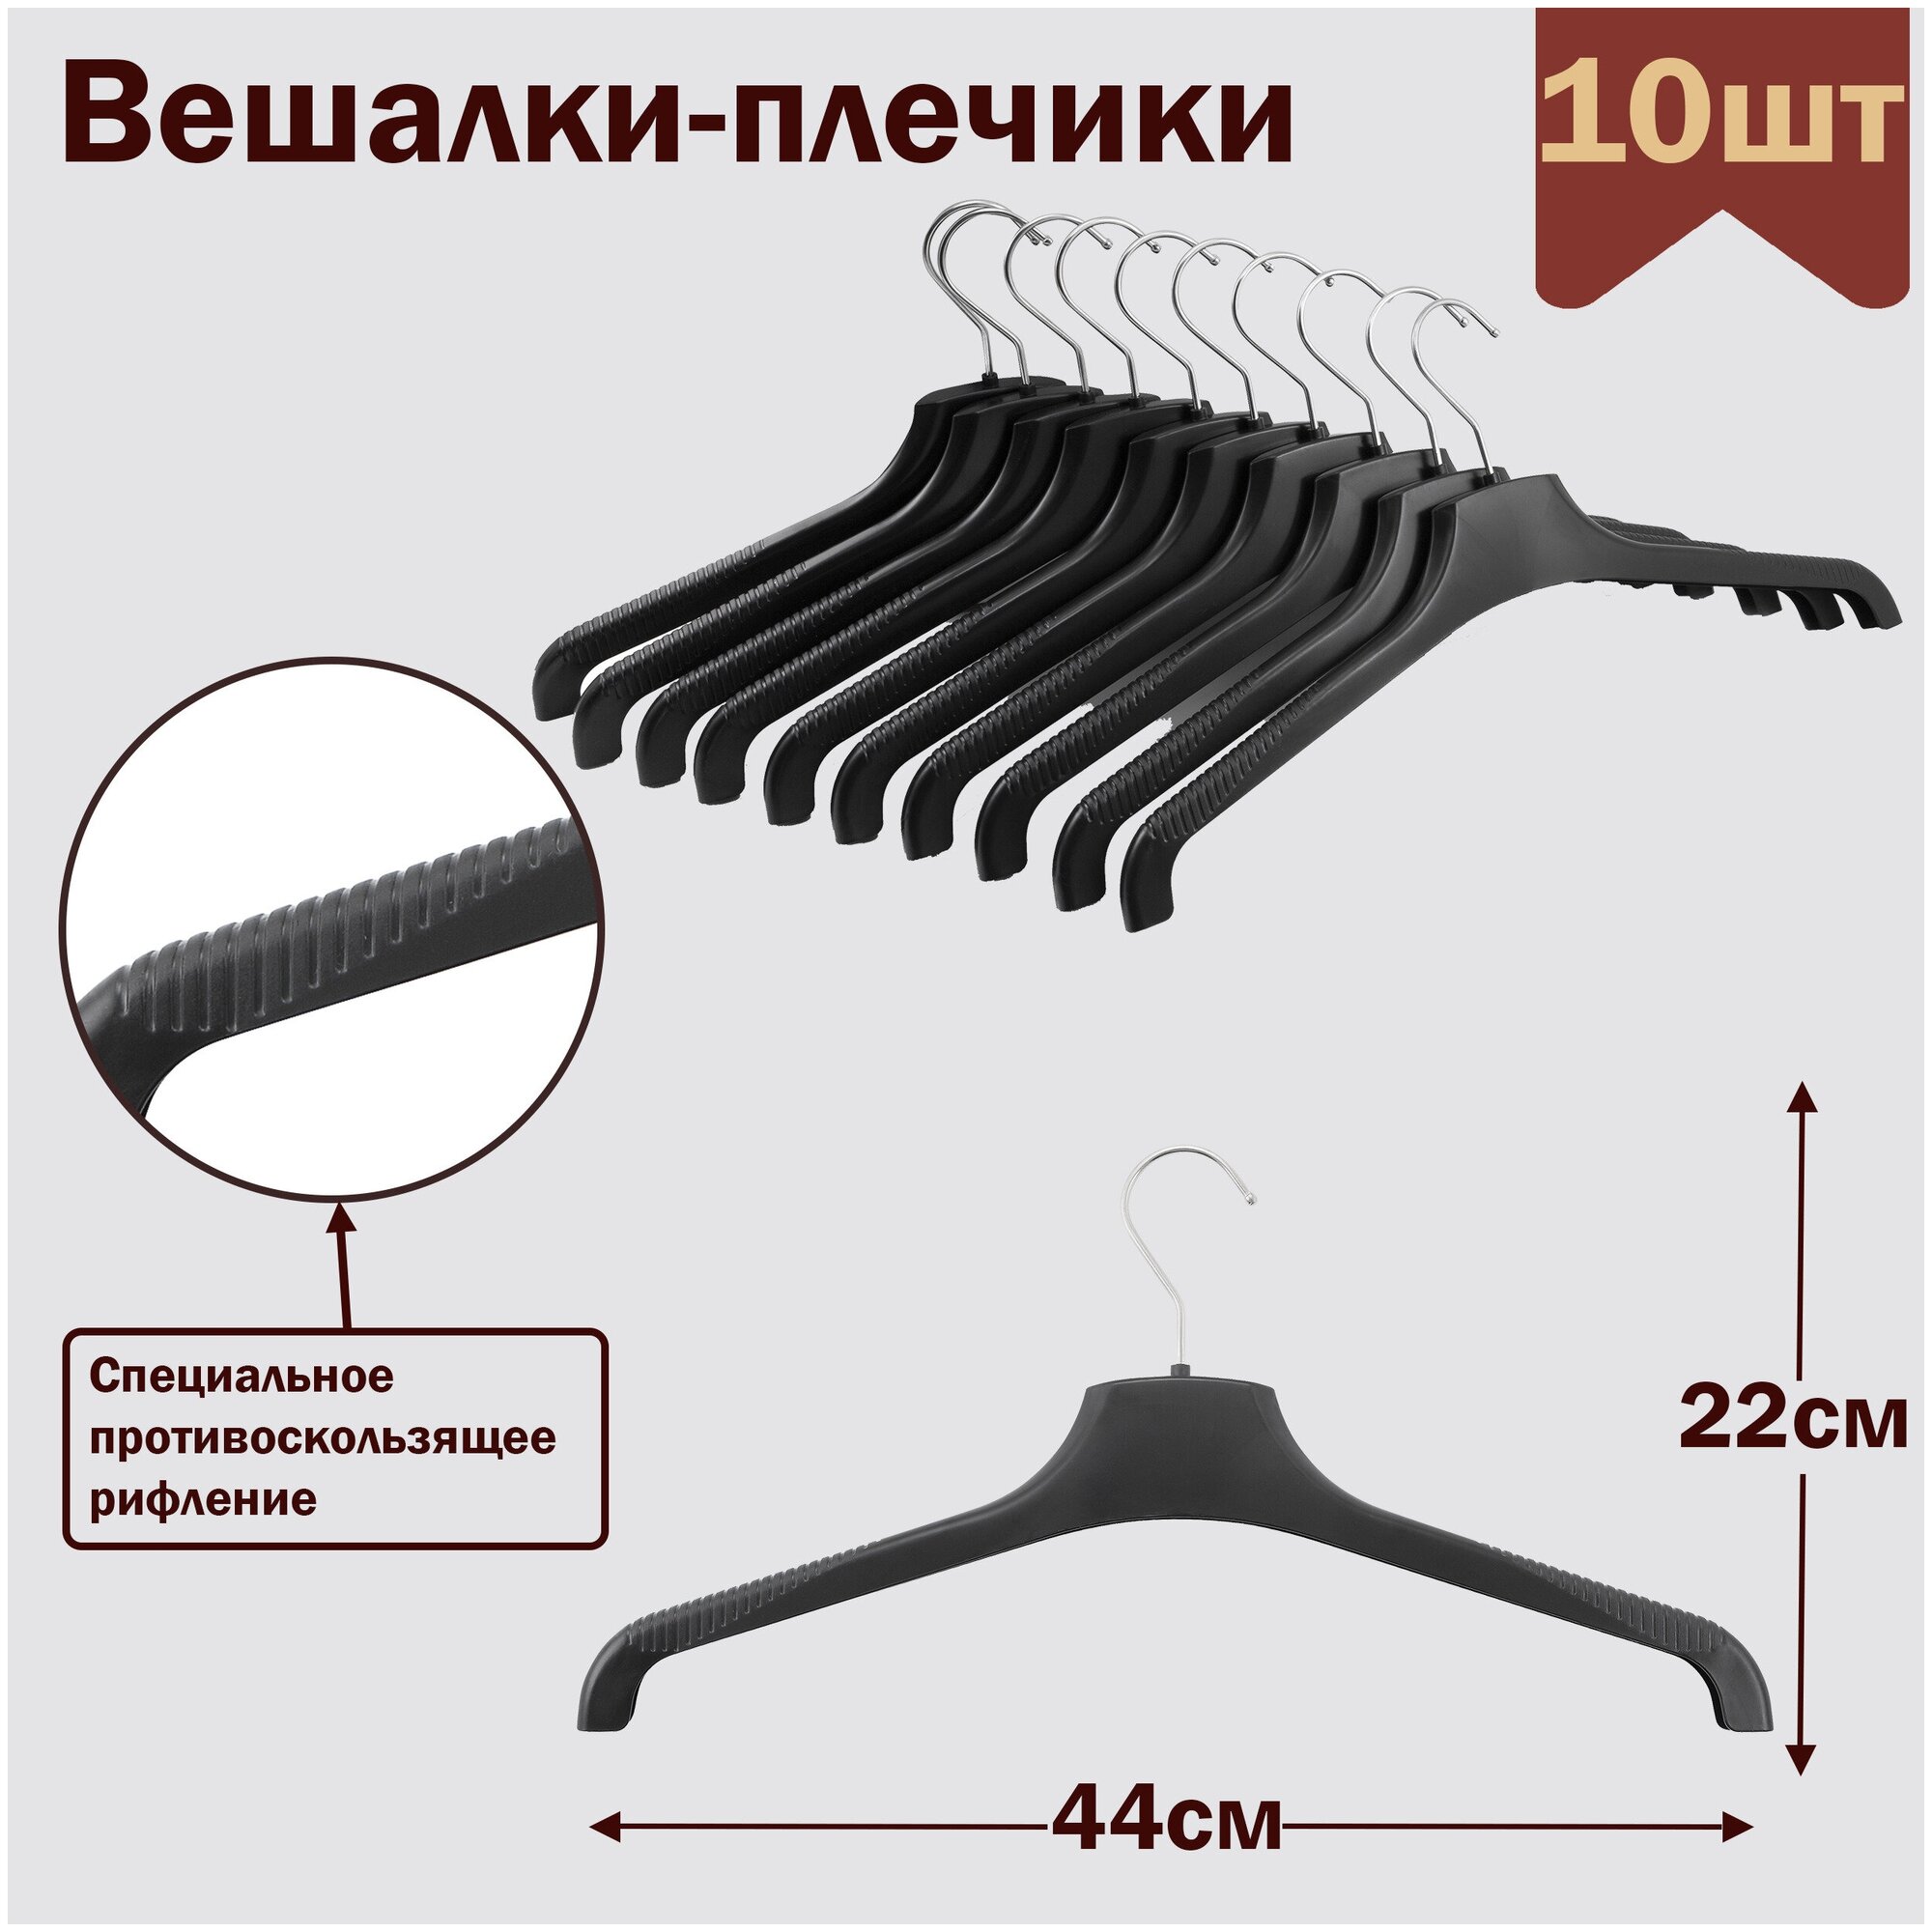 Вешалки-плечики для одежды пластиковые L-43 см цвет черный комплект 10 штук